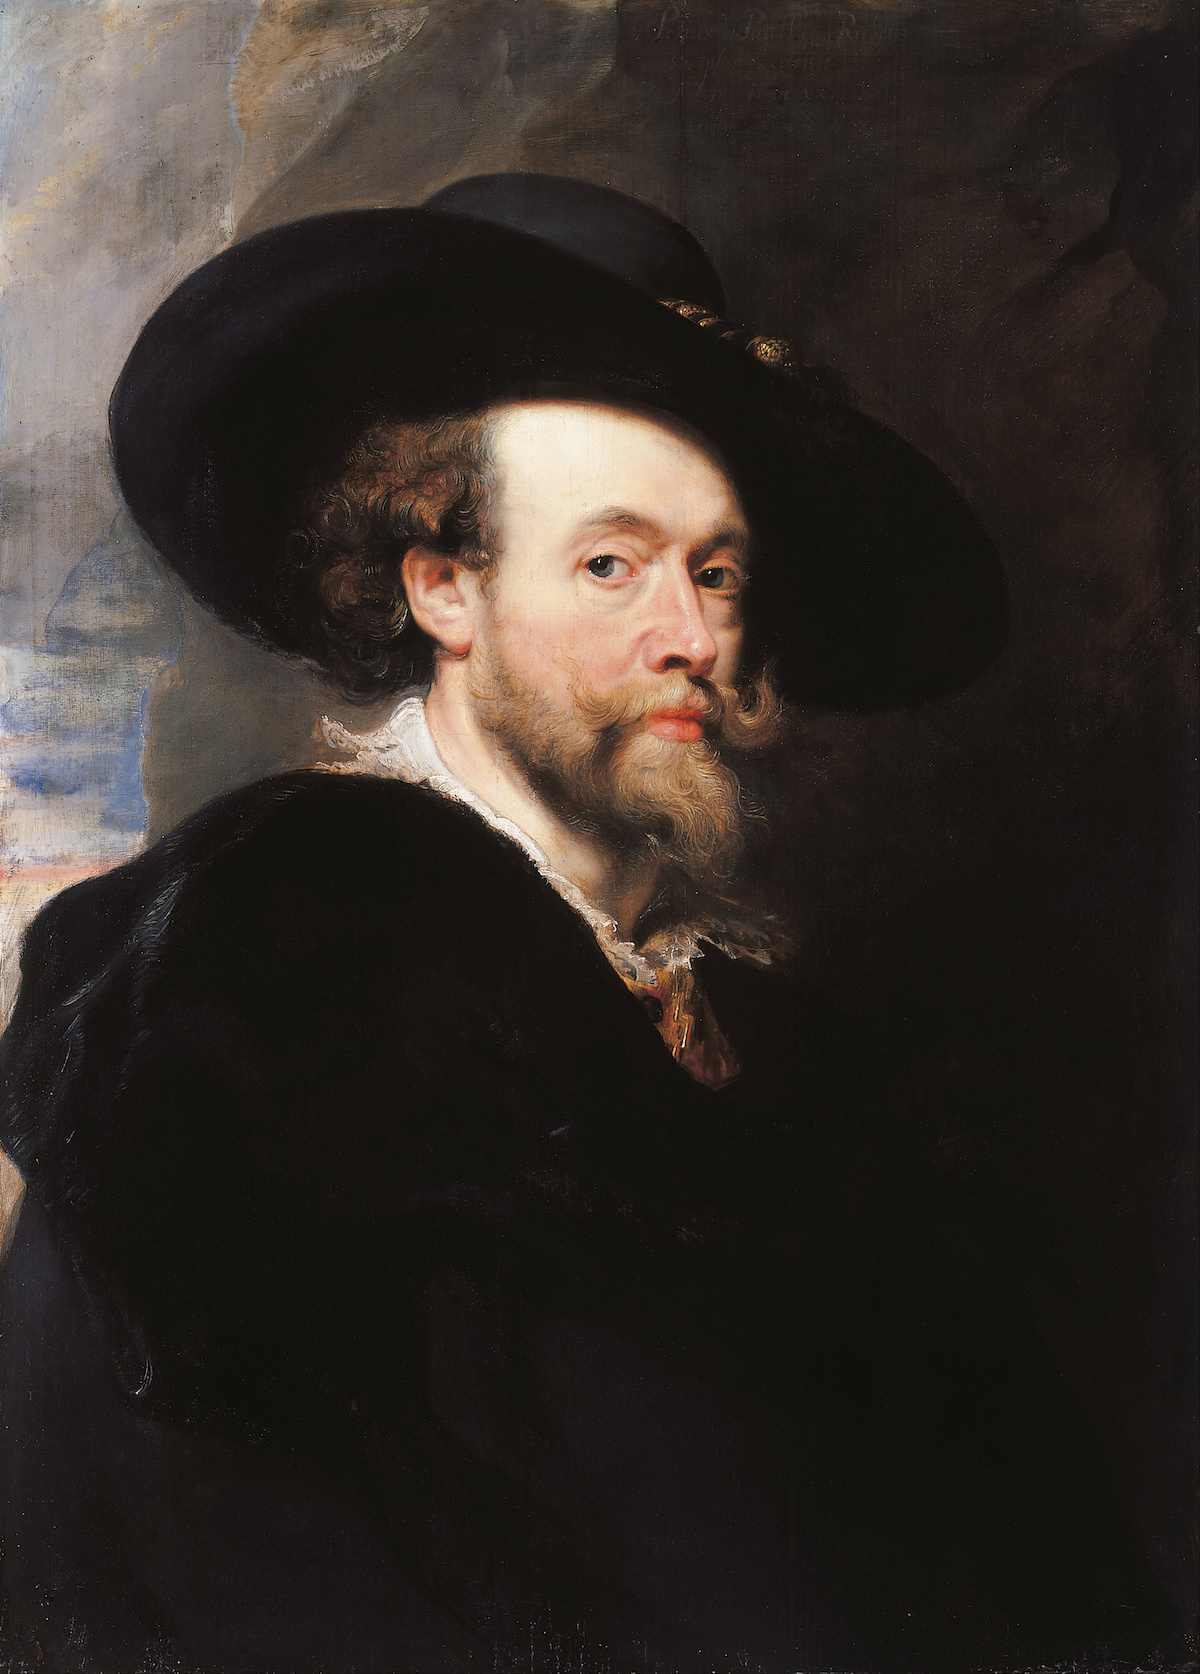 Self-Portrait by Peter Paul Rubens